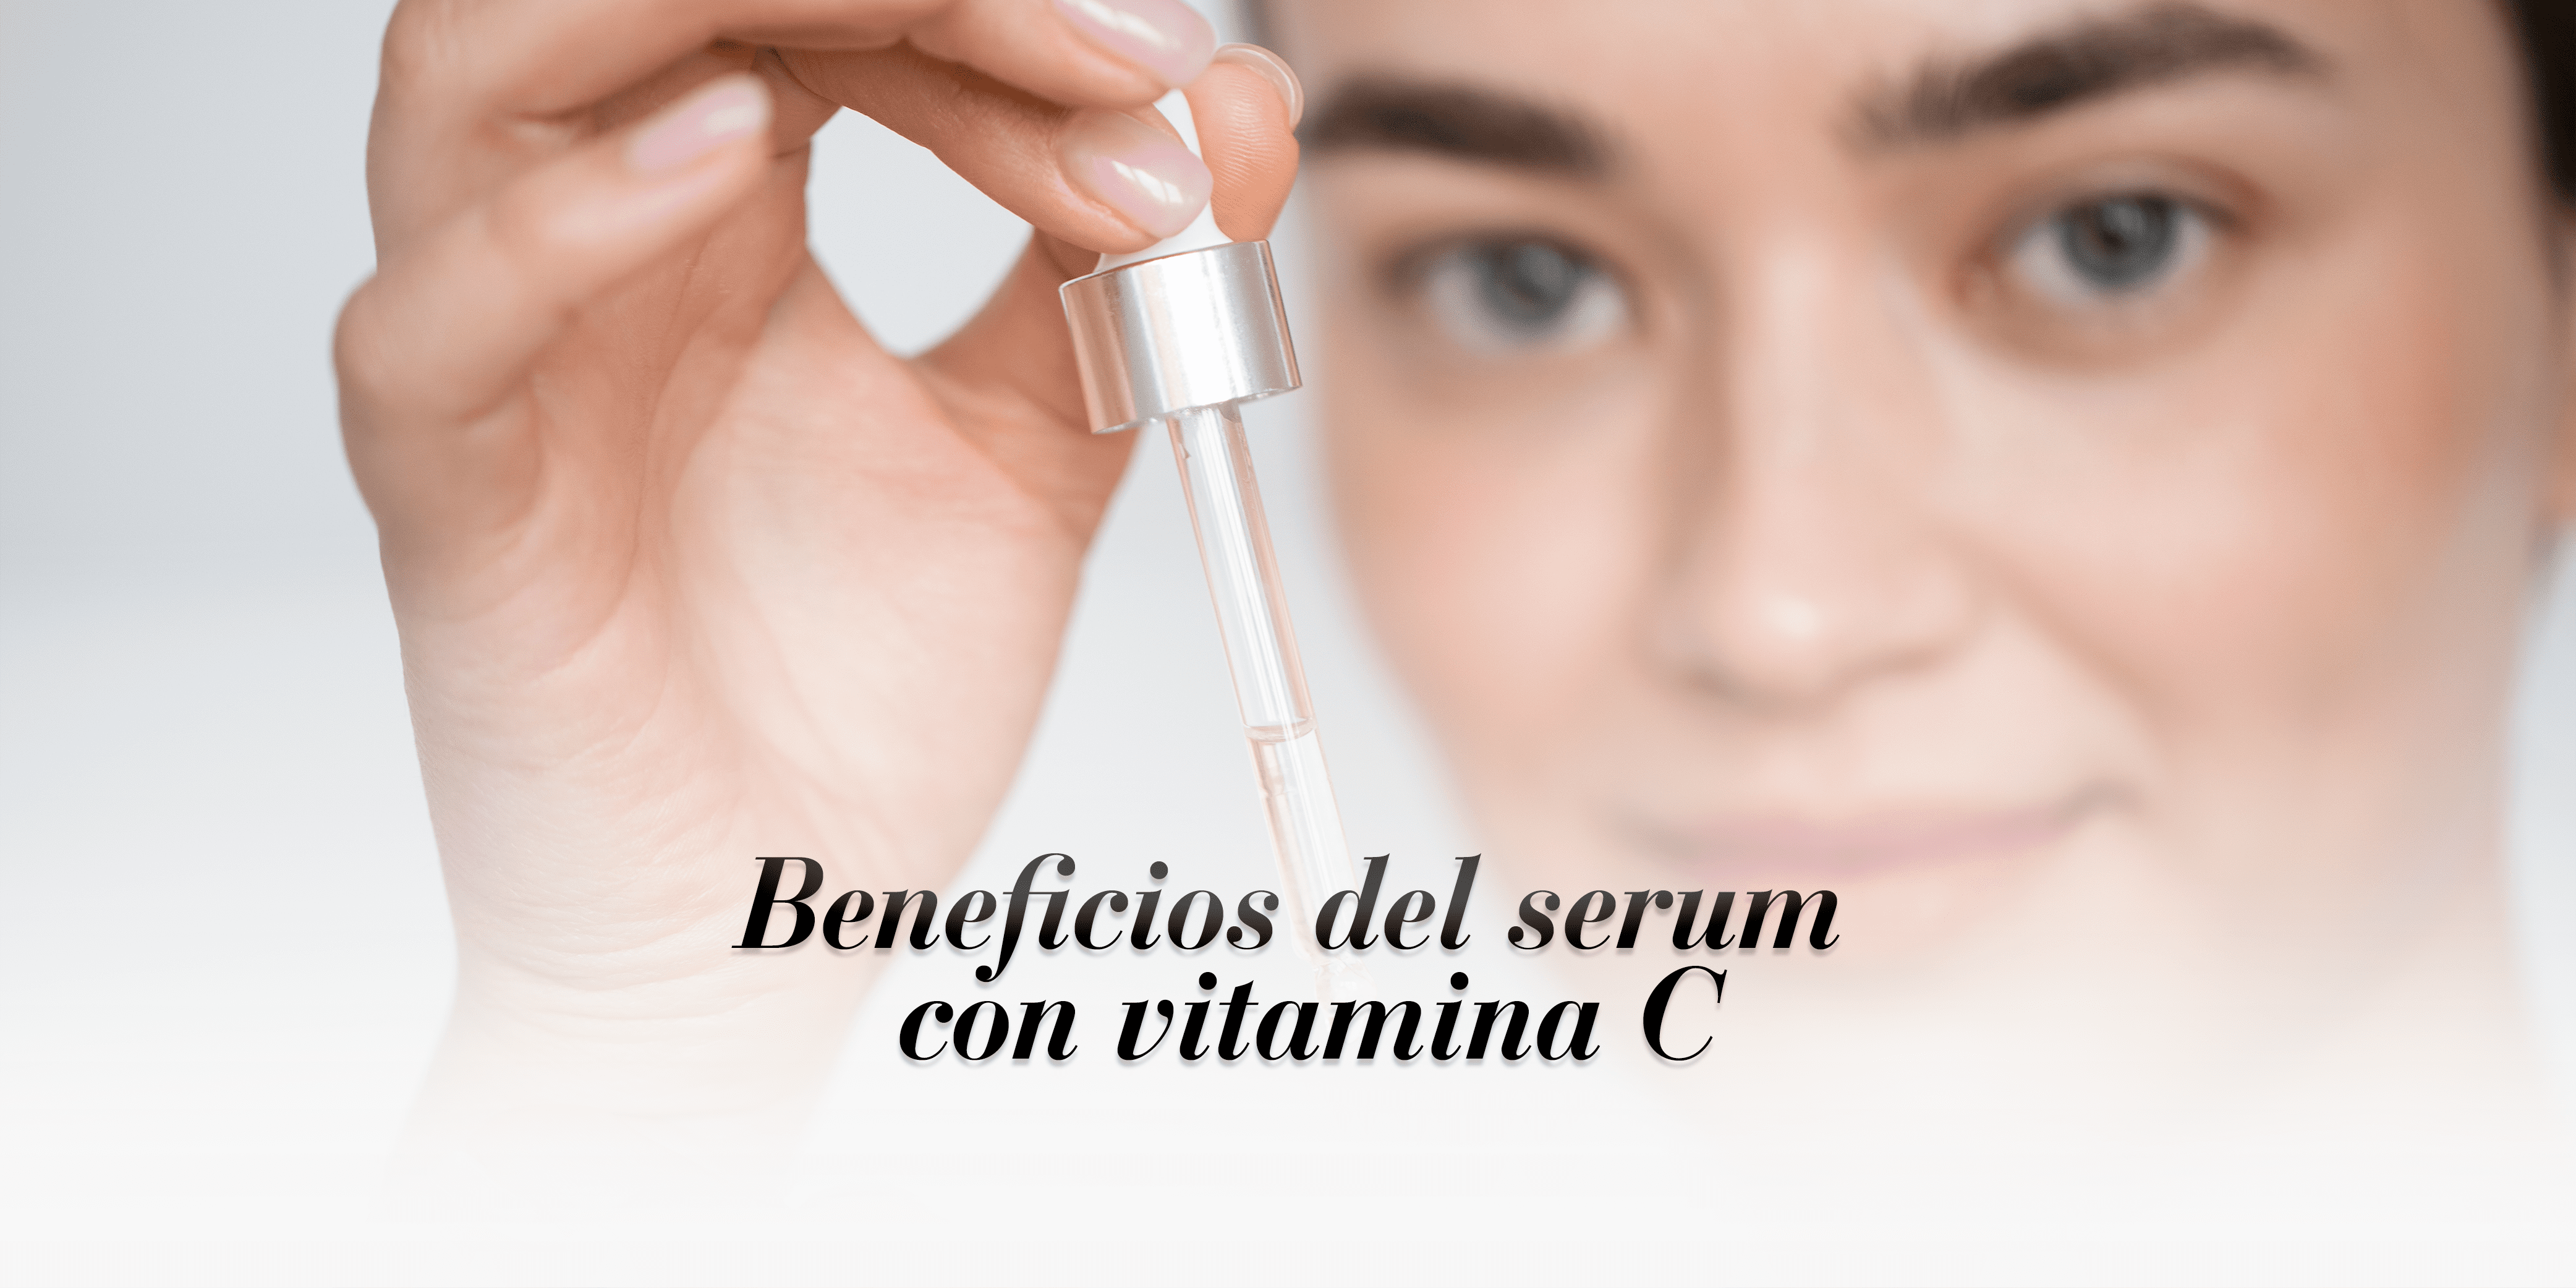 5 beneficios del serum con vitamina C: ¡Piel radiante garantizada!